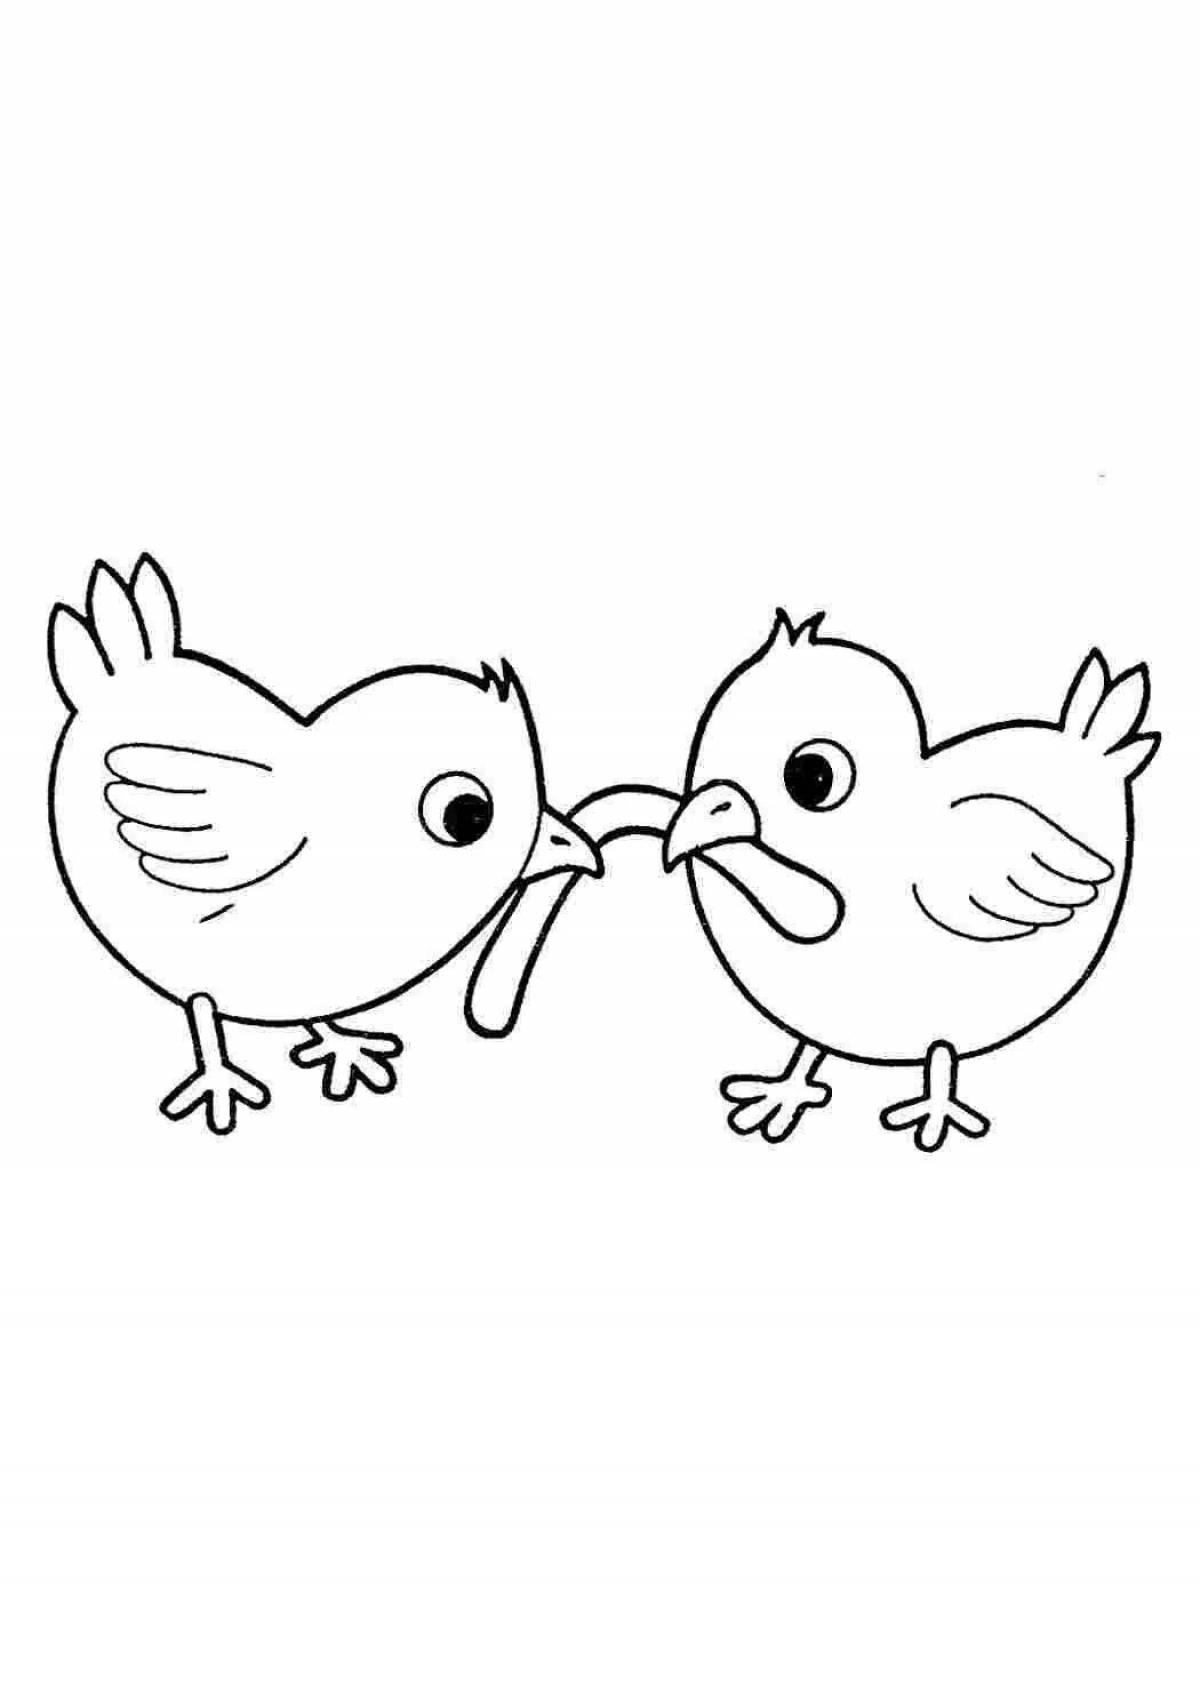 Забавные раскраски с цыплятами для детей 6-7 лет